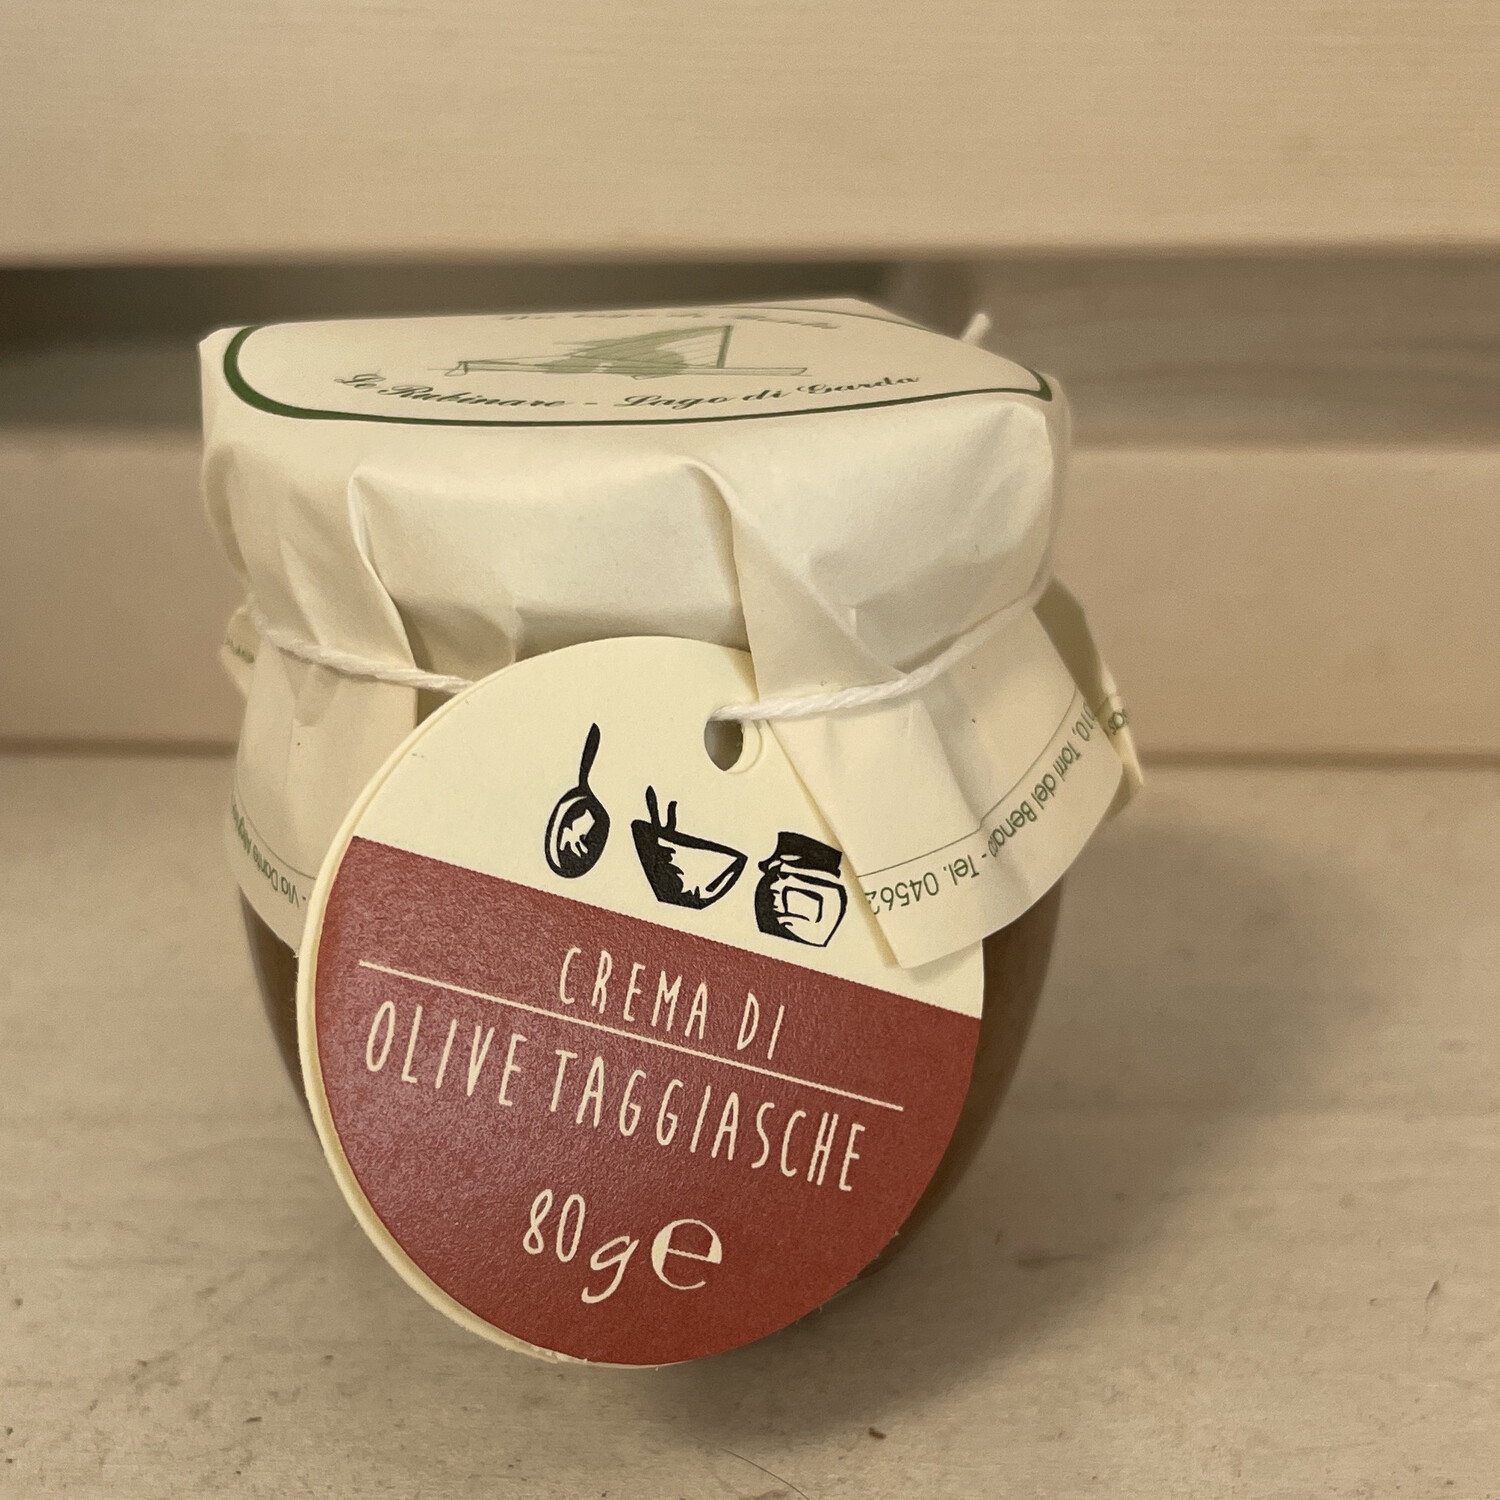 Crema di olive taggiasche 80 g 